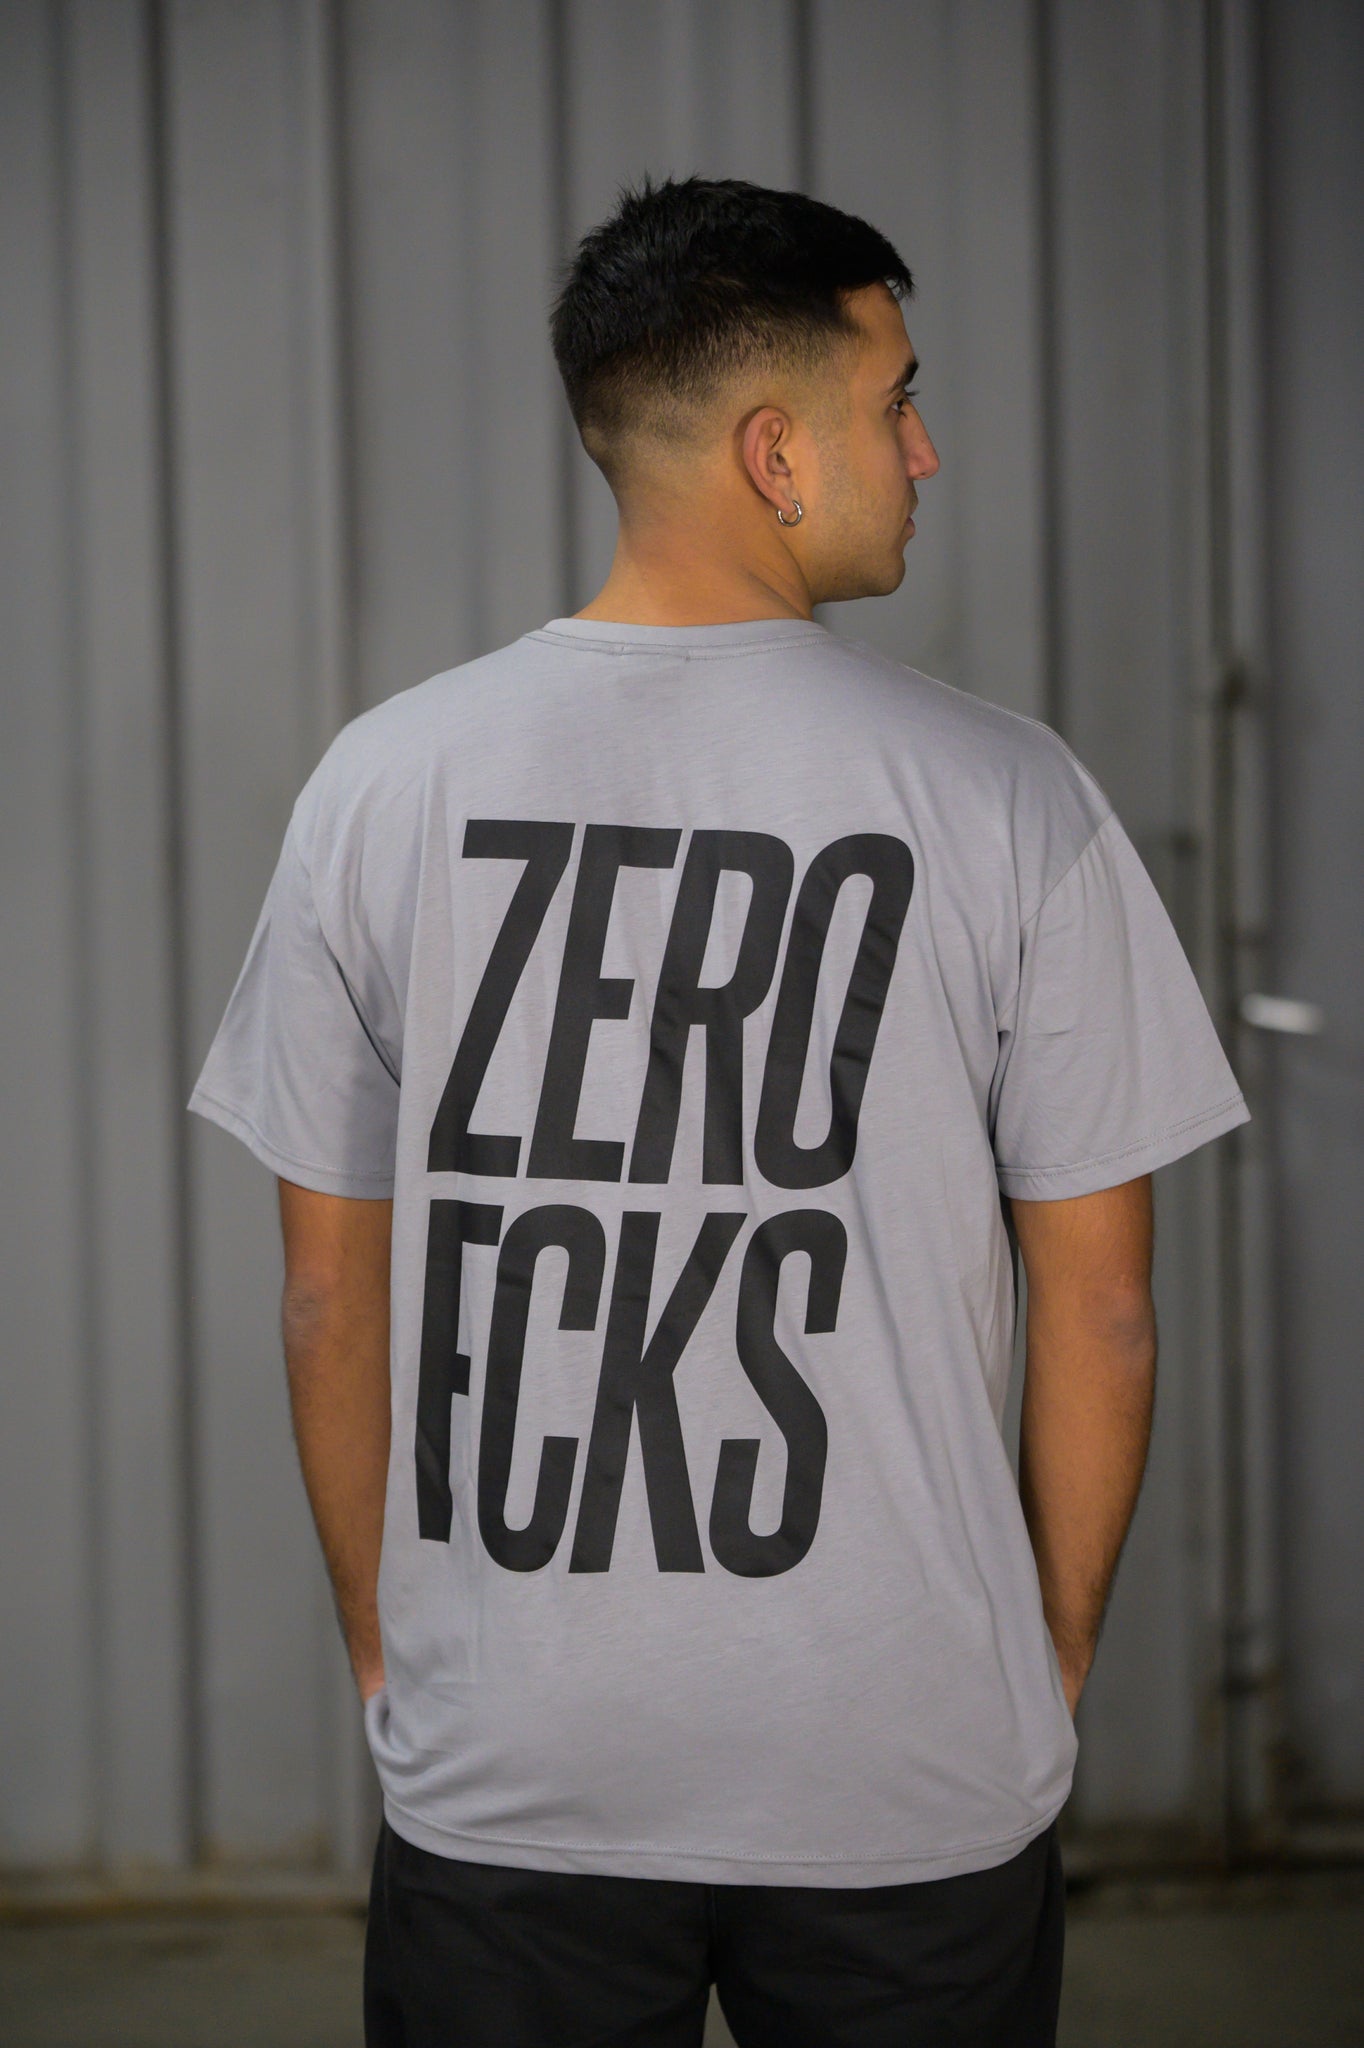 T-shirt ZFCKS - Zerofcks Vertical